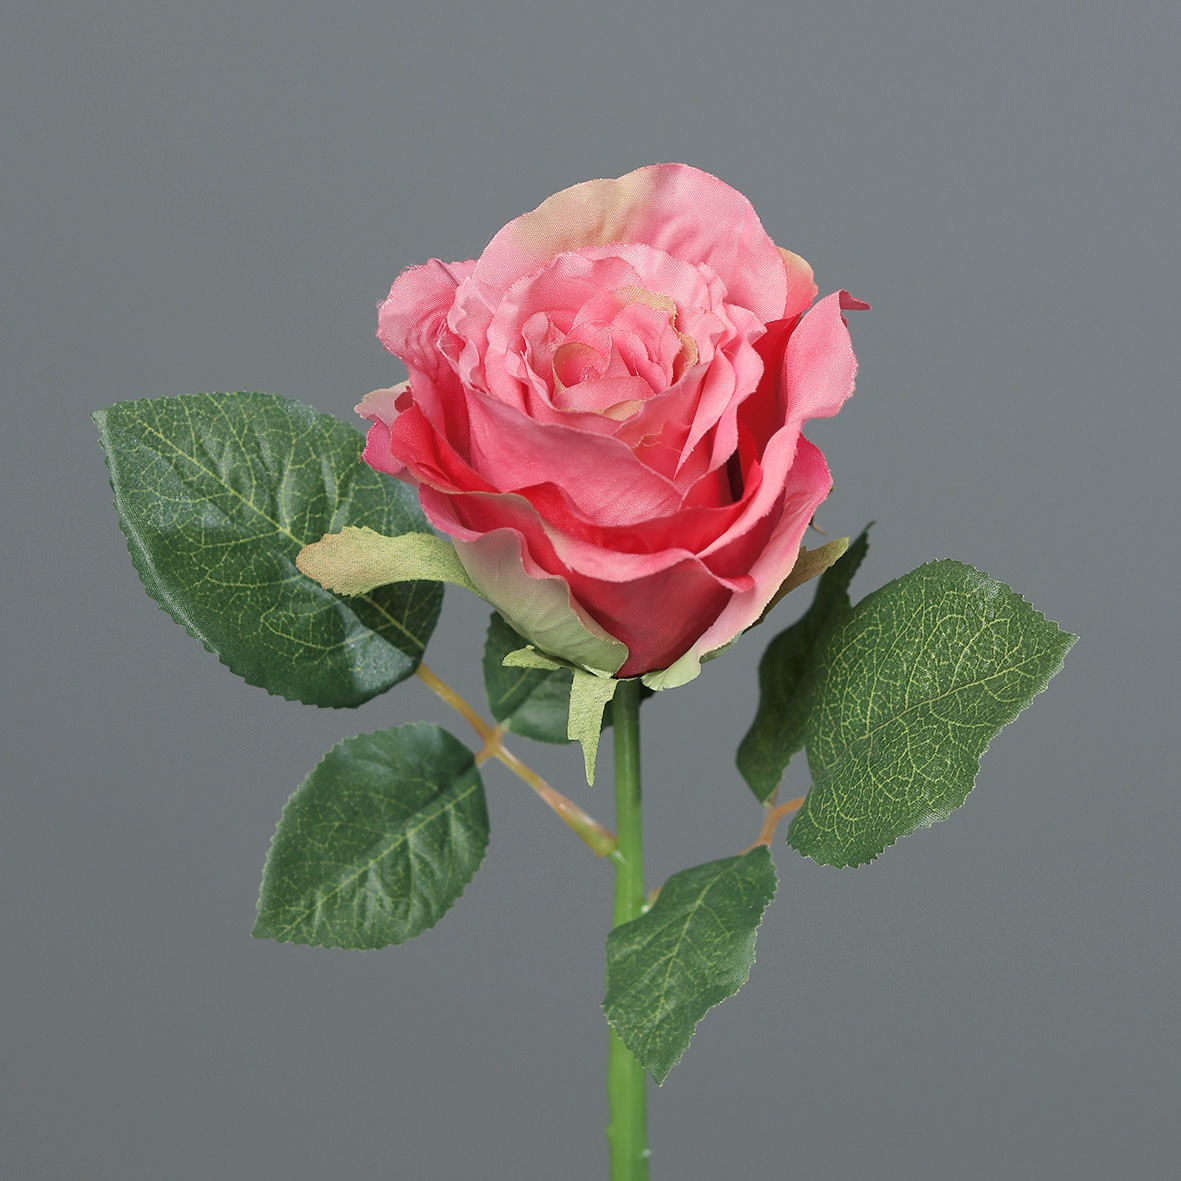 Rose 30cm rosa-pink DP Kunstblumen künstliche Blumen